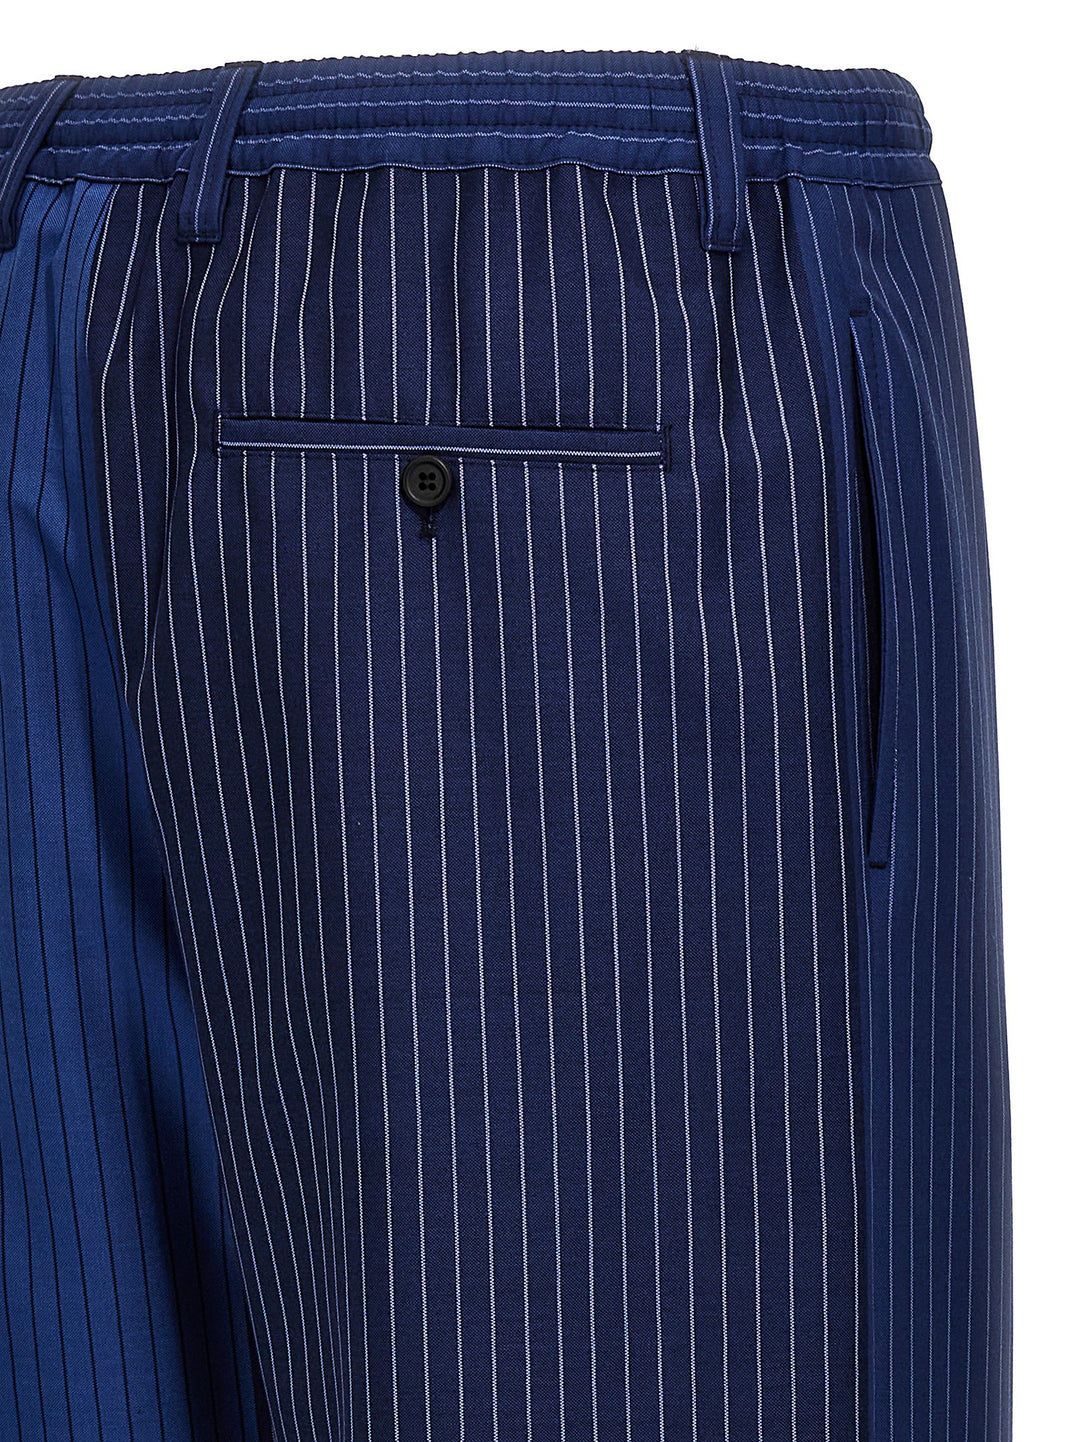 Striped Pantaloni Blu